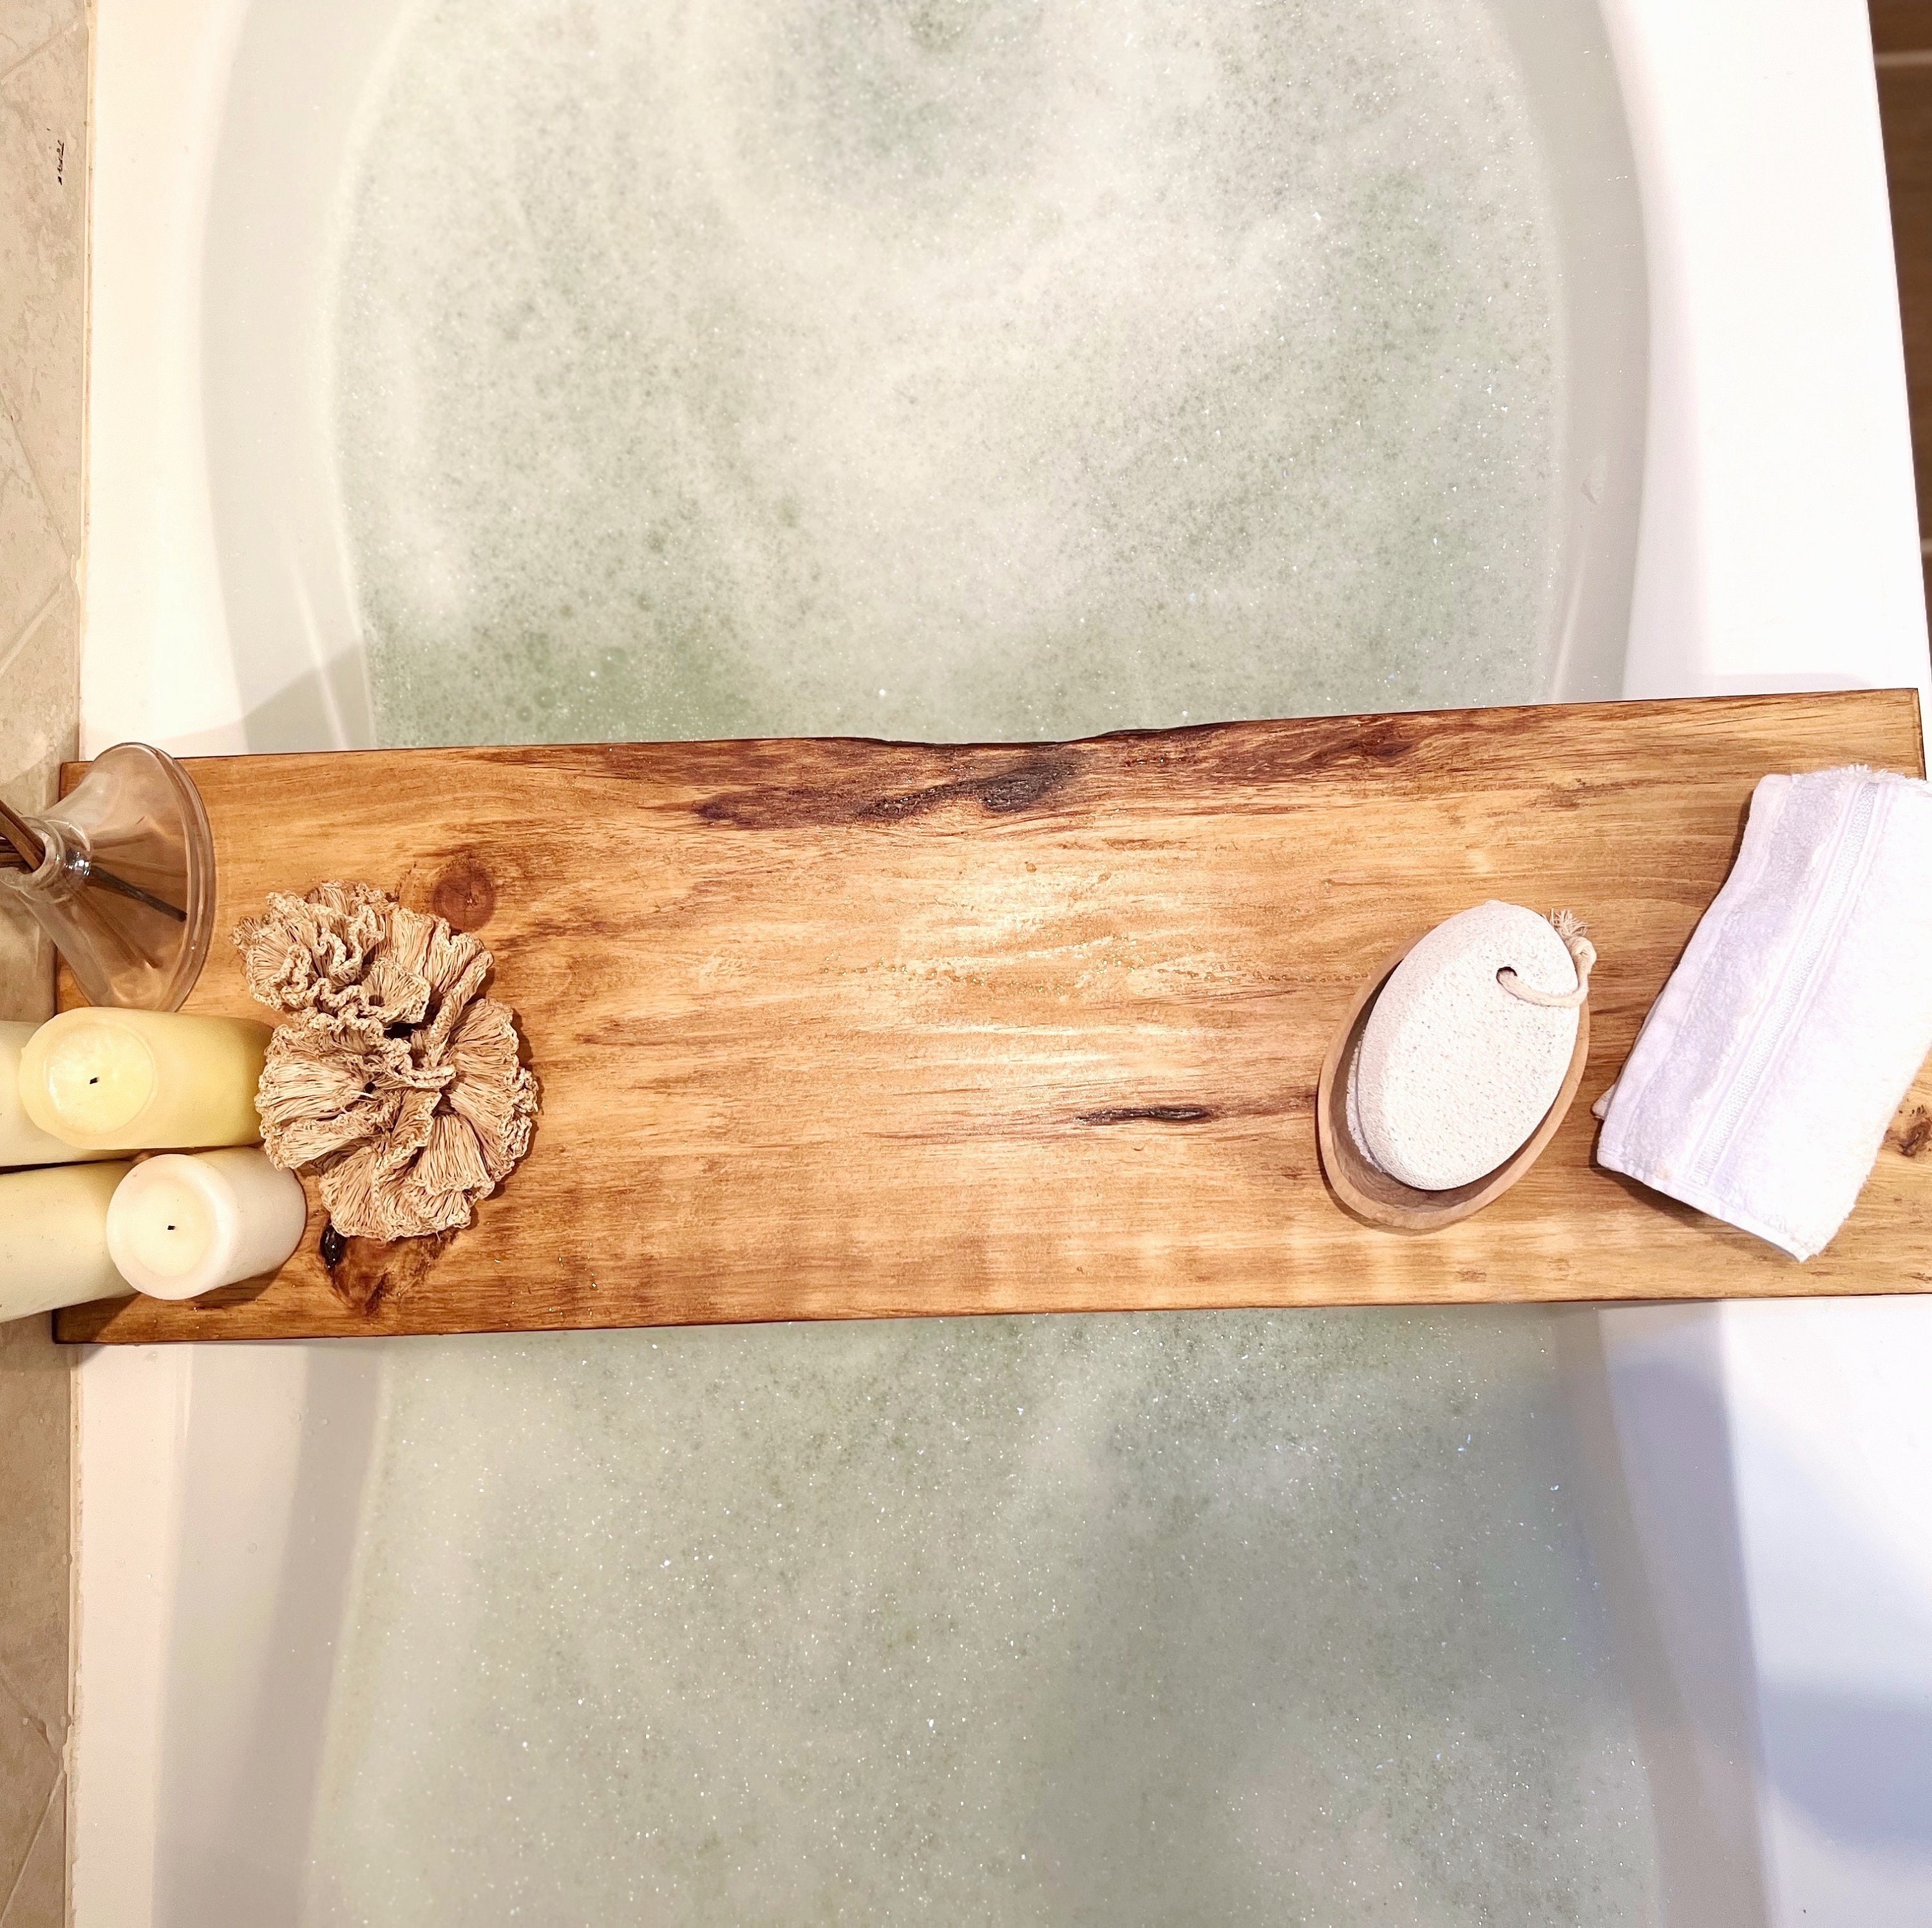 DIY Waterproofed Wood Bath Tray - Dream Green DIY